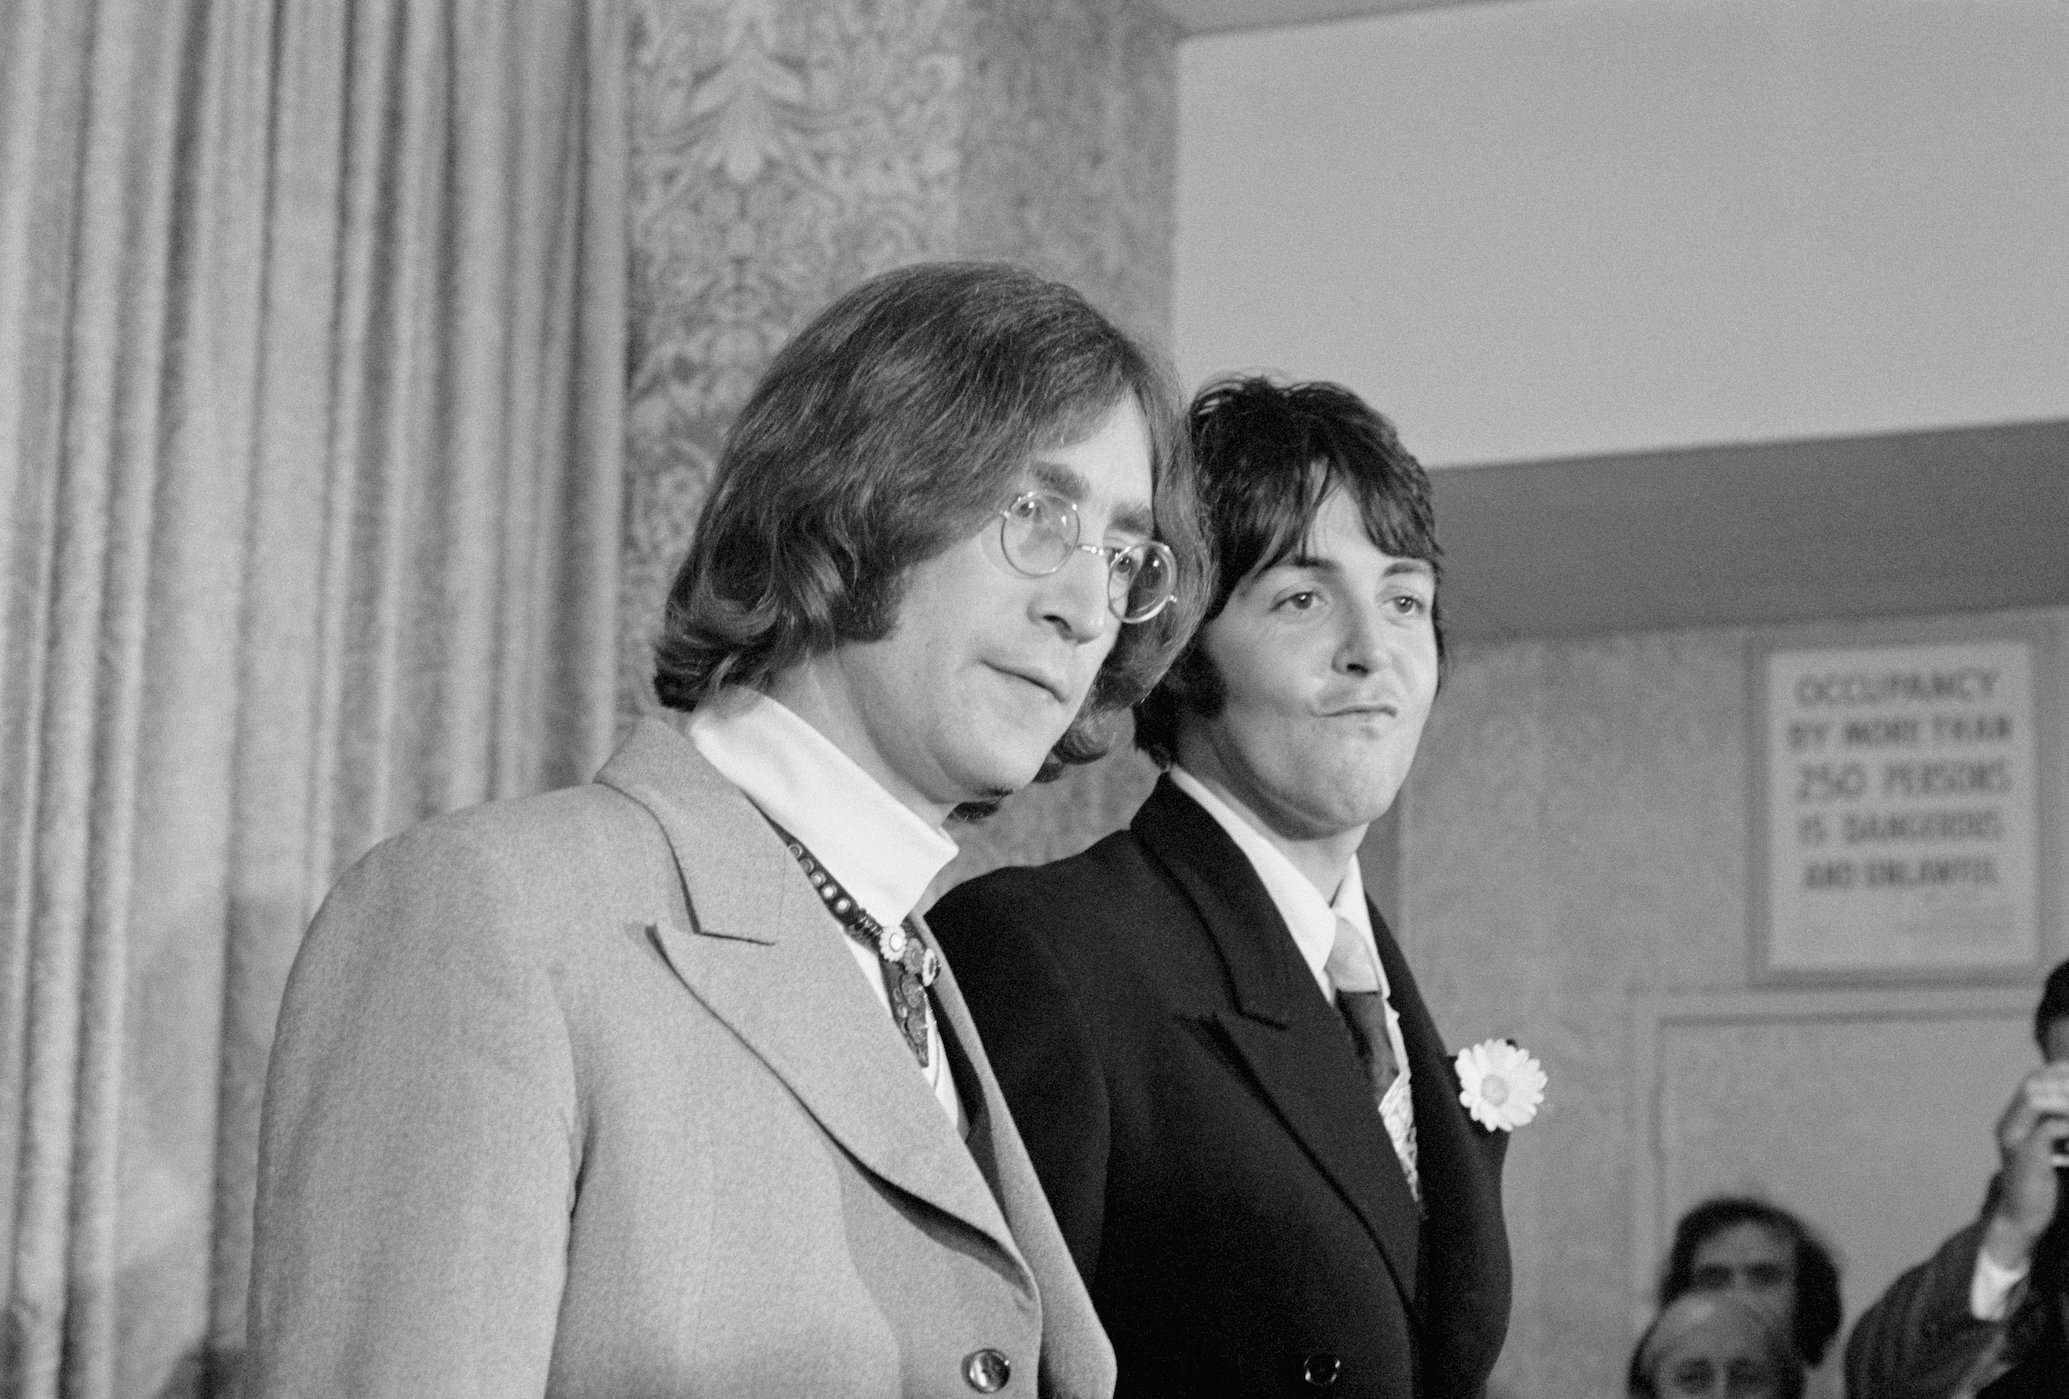 Paul McCartney compartió lo que más le impresionó de John Lennon cuando se conocieron